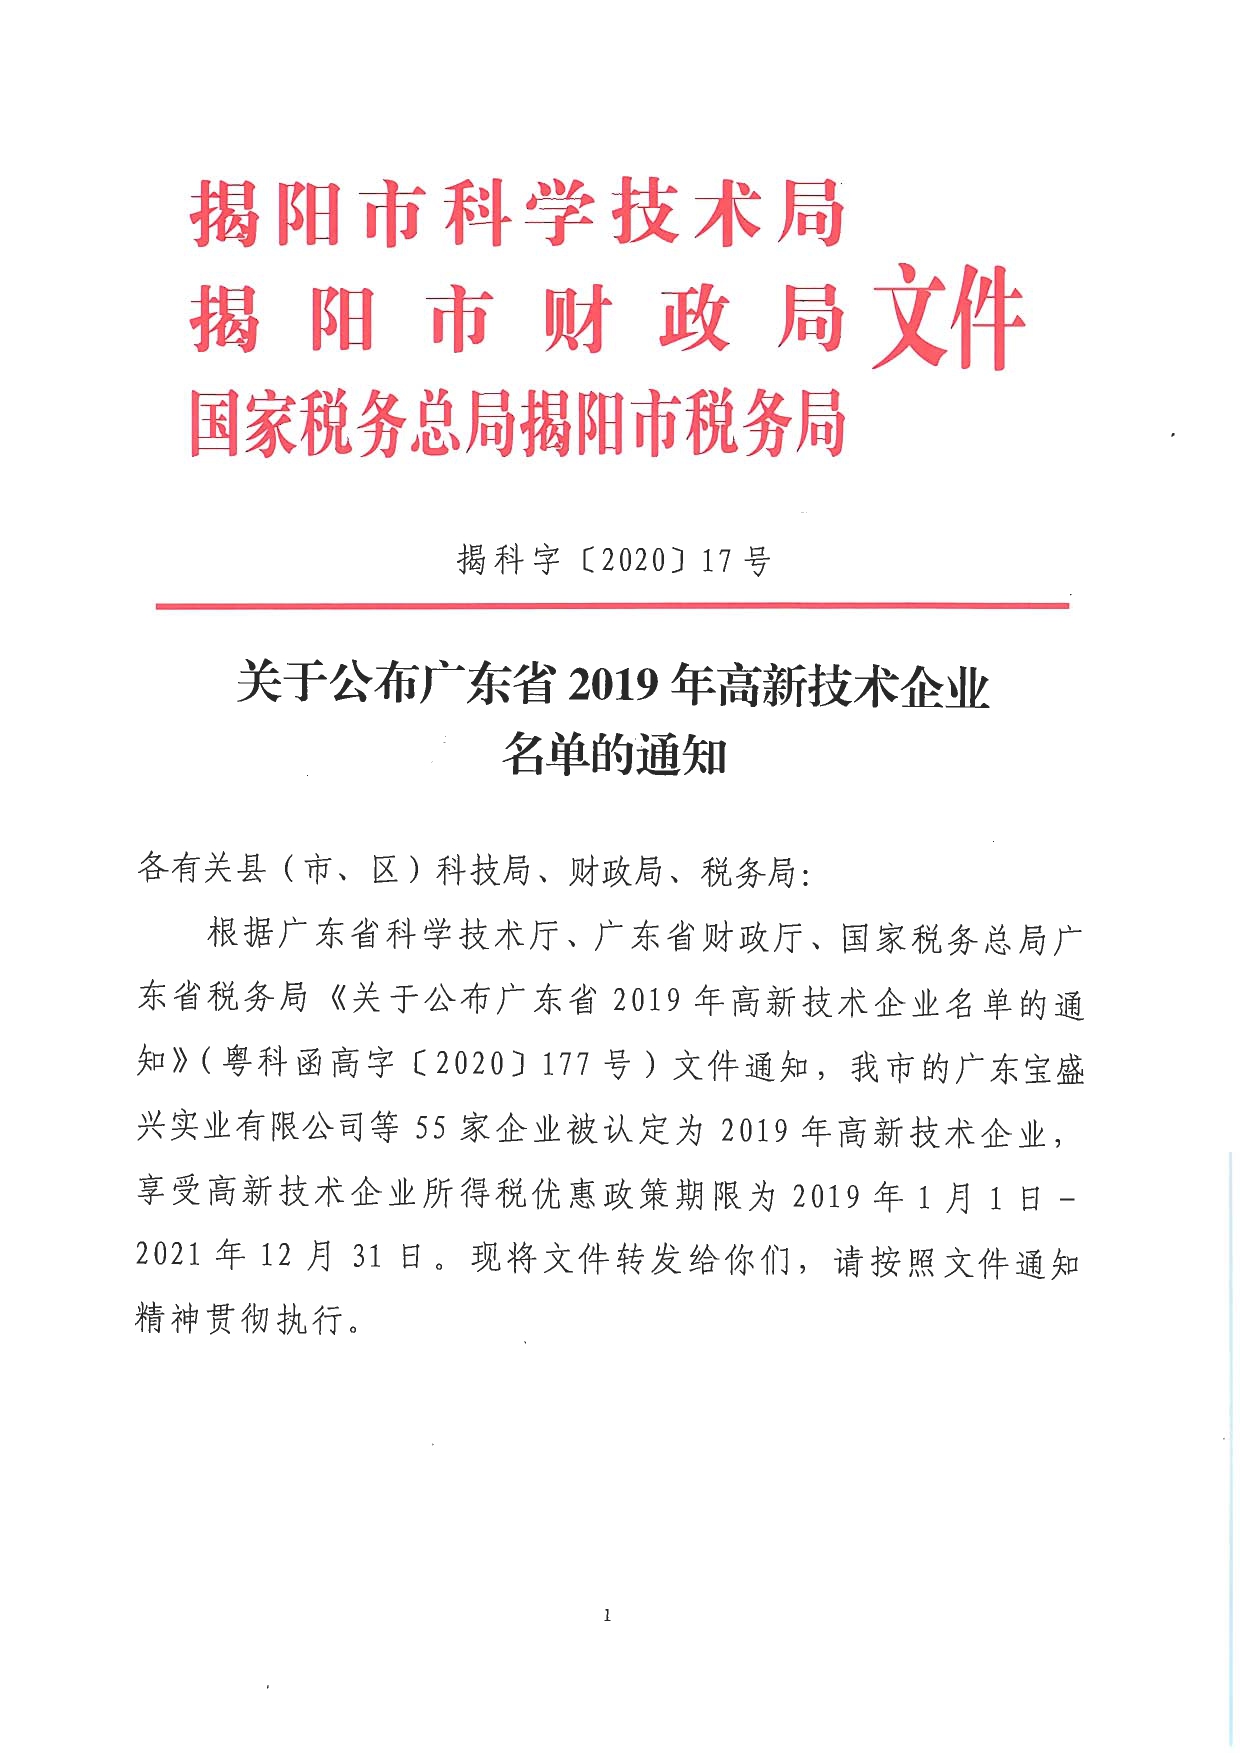 关于公布广东省2019年高新技术企业名单的通知_page-0001.jpg